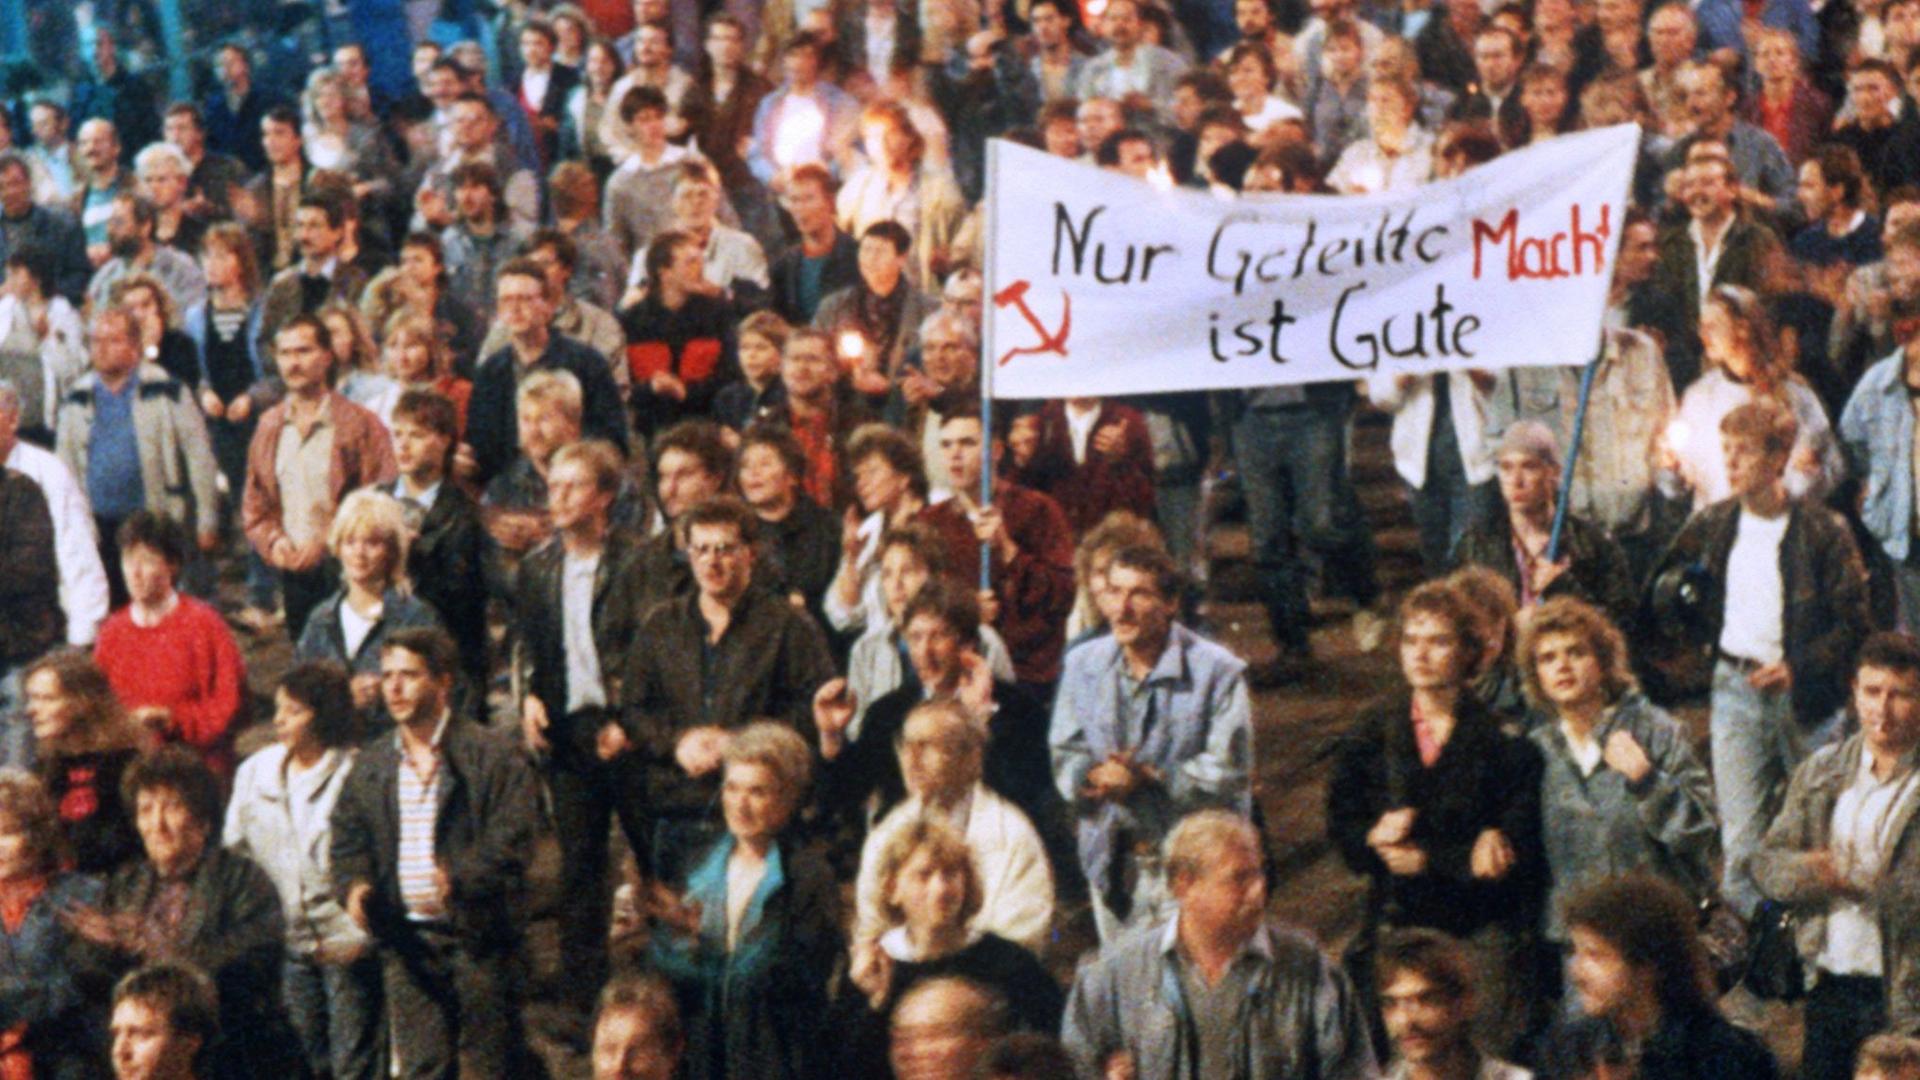 Leipzig am 23.10.1989: Rund 300.000 Menschen demonstrieren für die Freiheit.